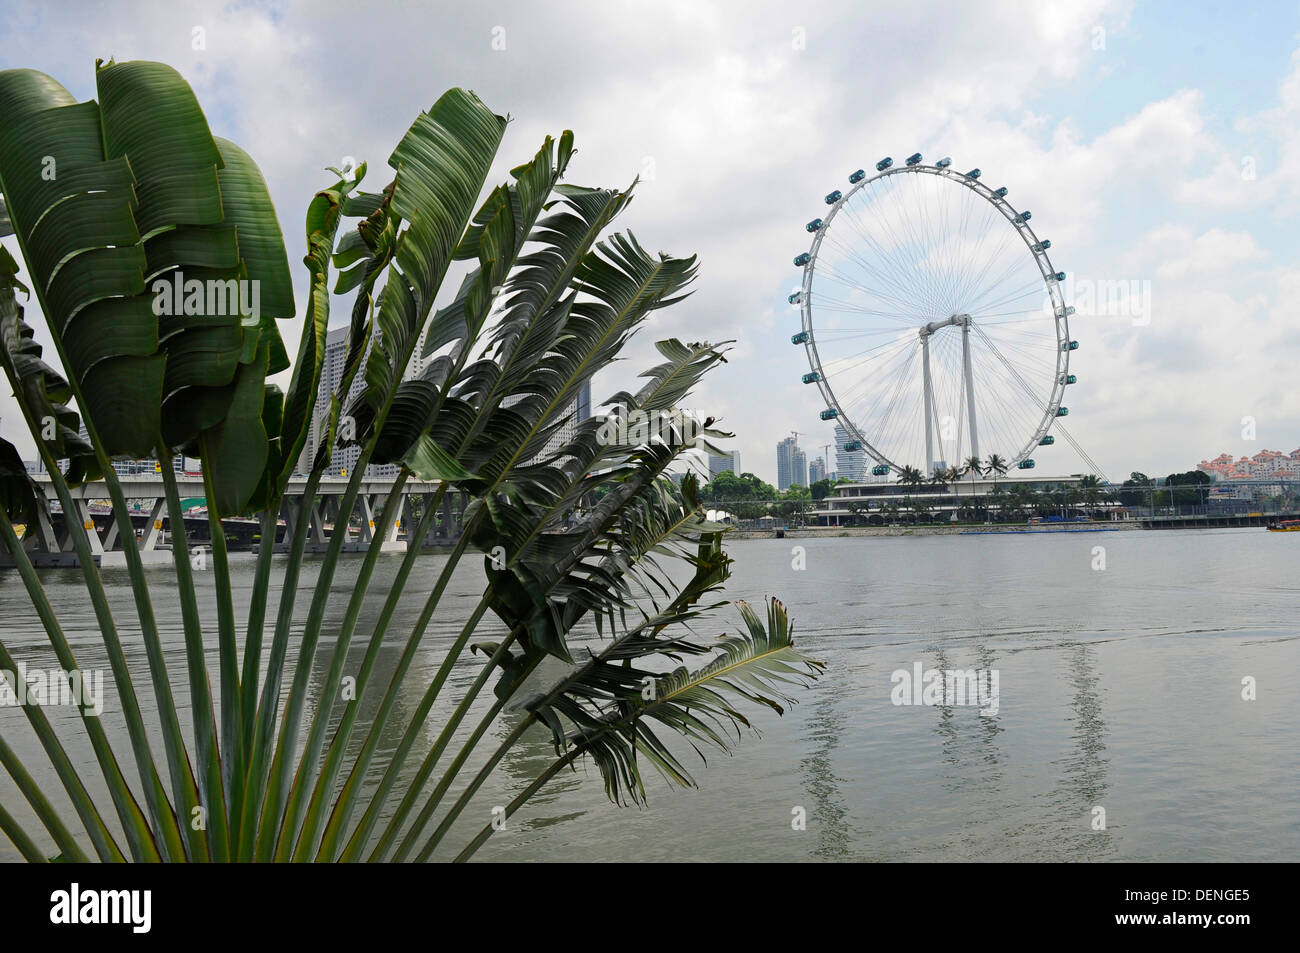 Il Singapore Flyer, il più alto ruota panoramica Ferris in tutto il mondo, presso i giardini della baia. Foto Stock